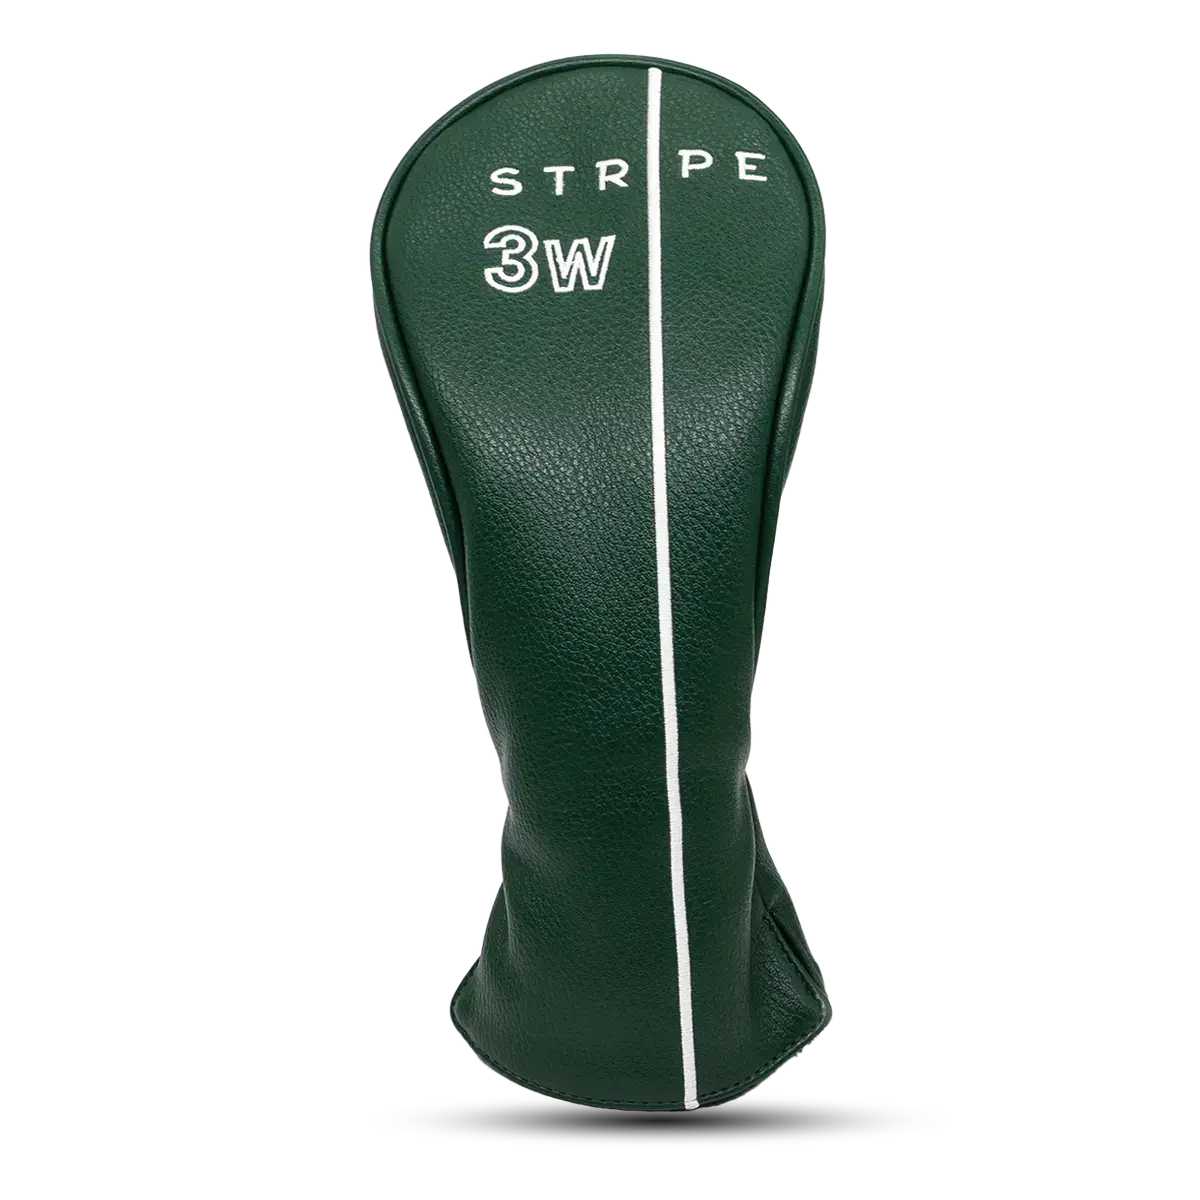 Headcover för fairway woods i grönt skinn och med vitbroderad logotyp. Skyddande fleece på insidan.